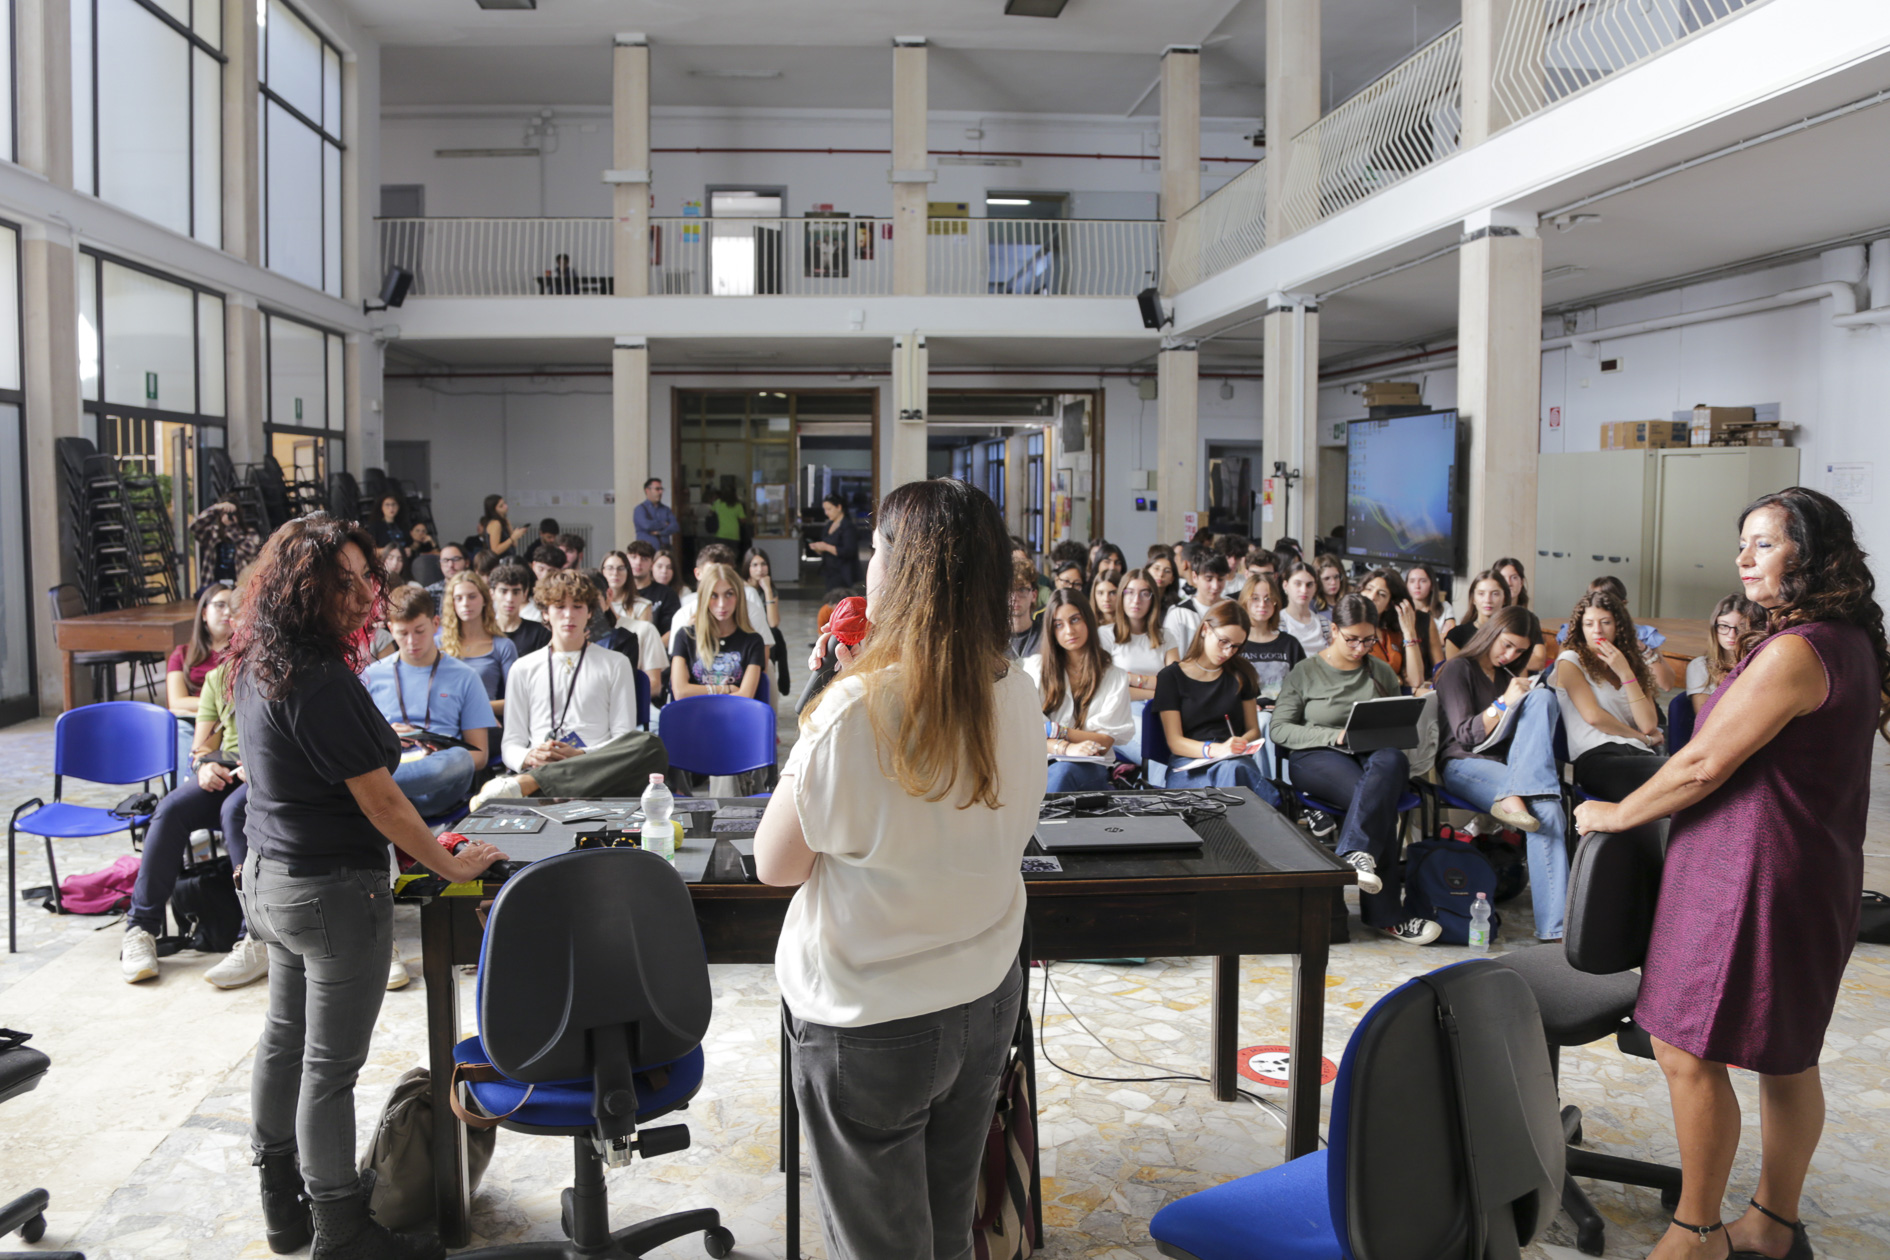 Futurə: al Liceo Palmieri di Lecce si parla di femminismi, stereotipi e prospettive di genere